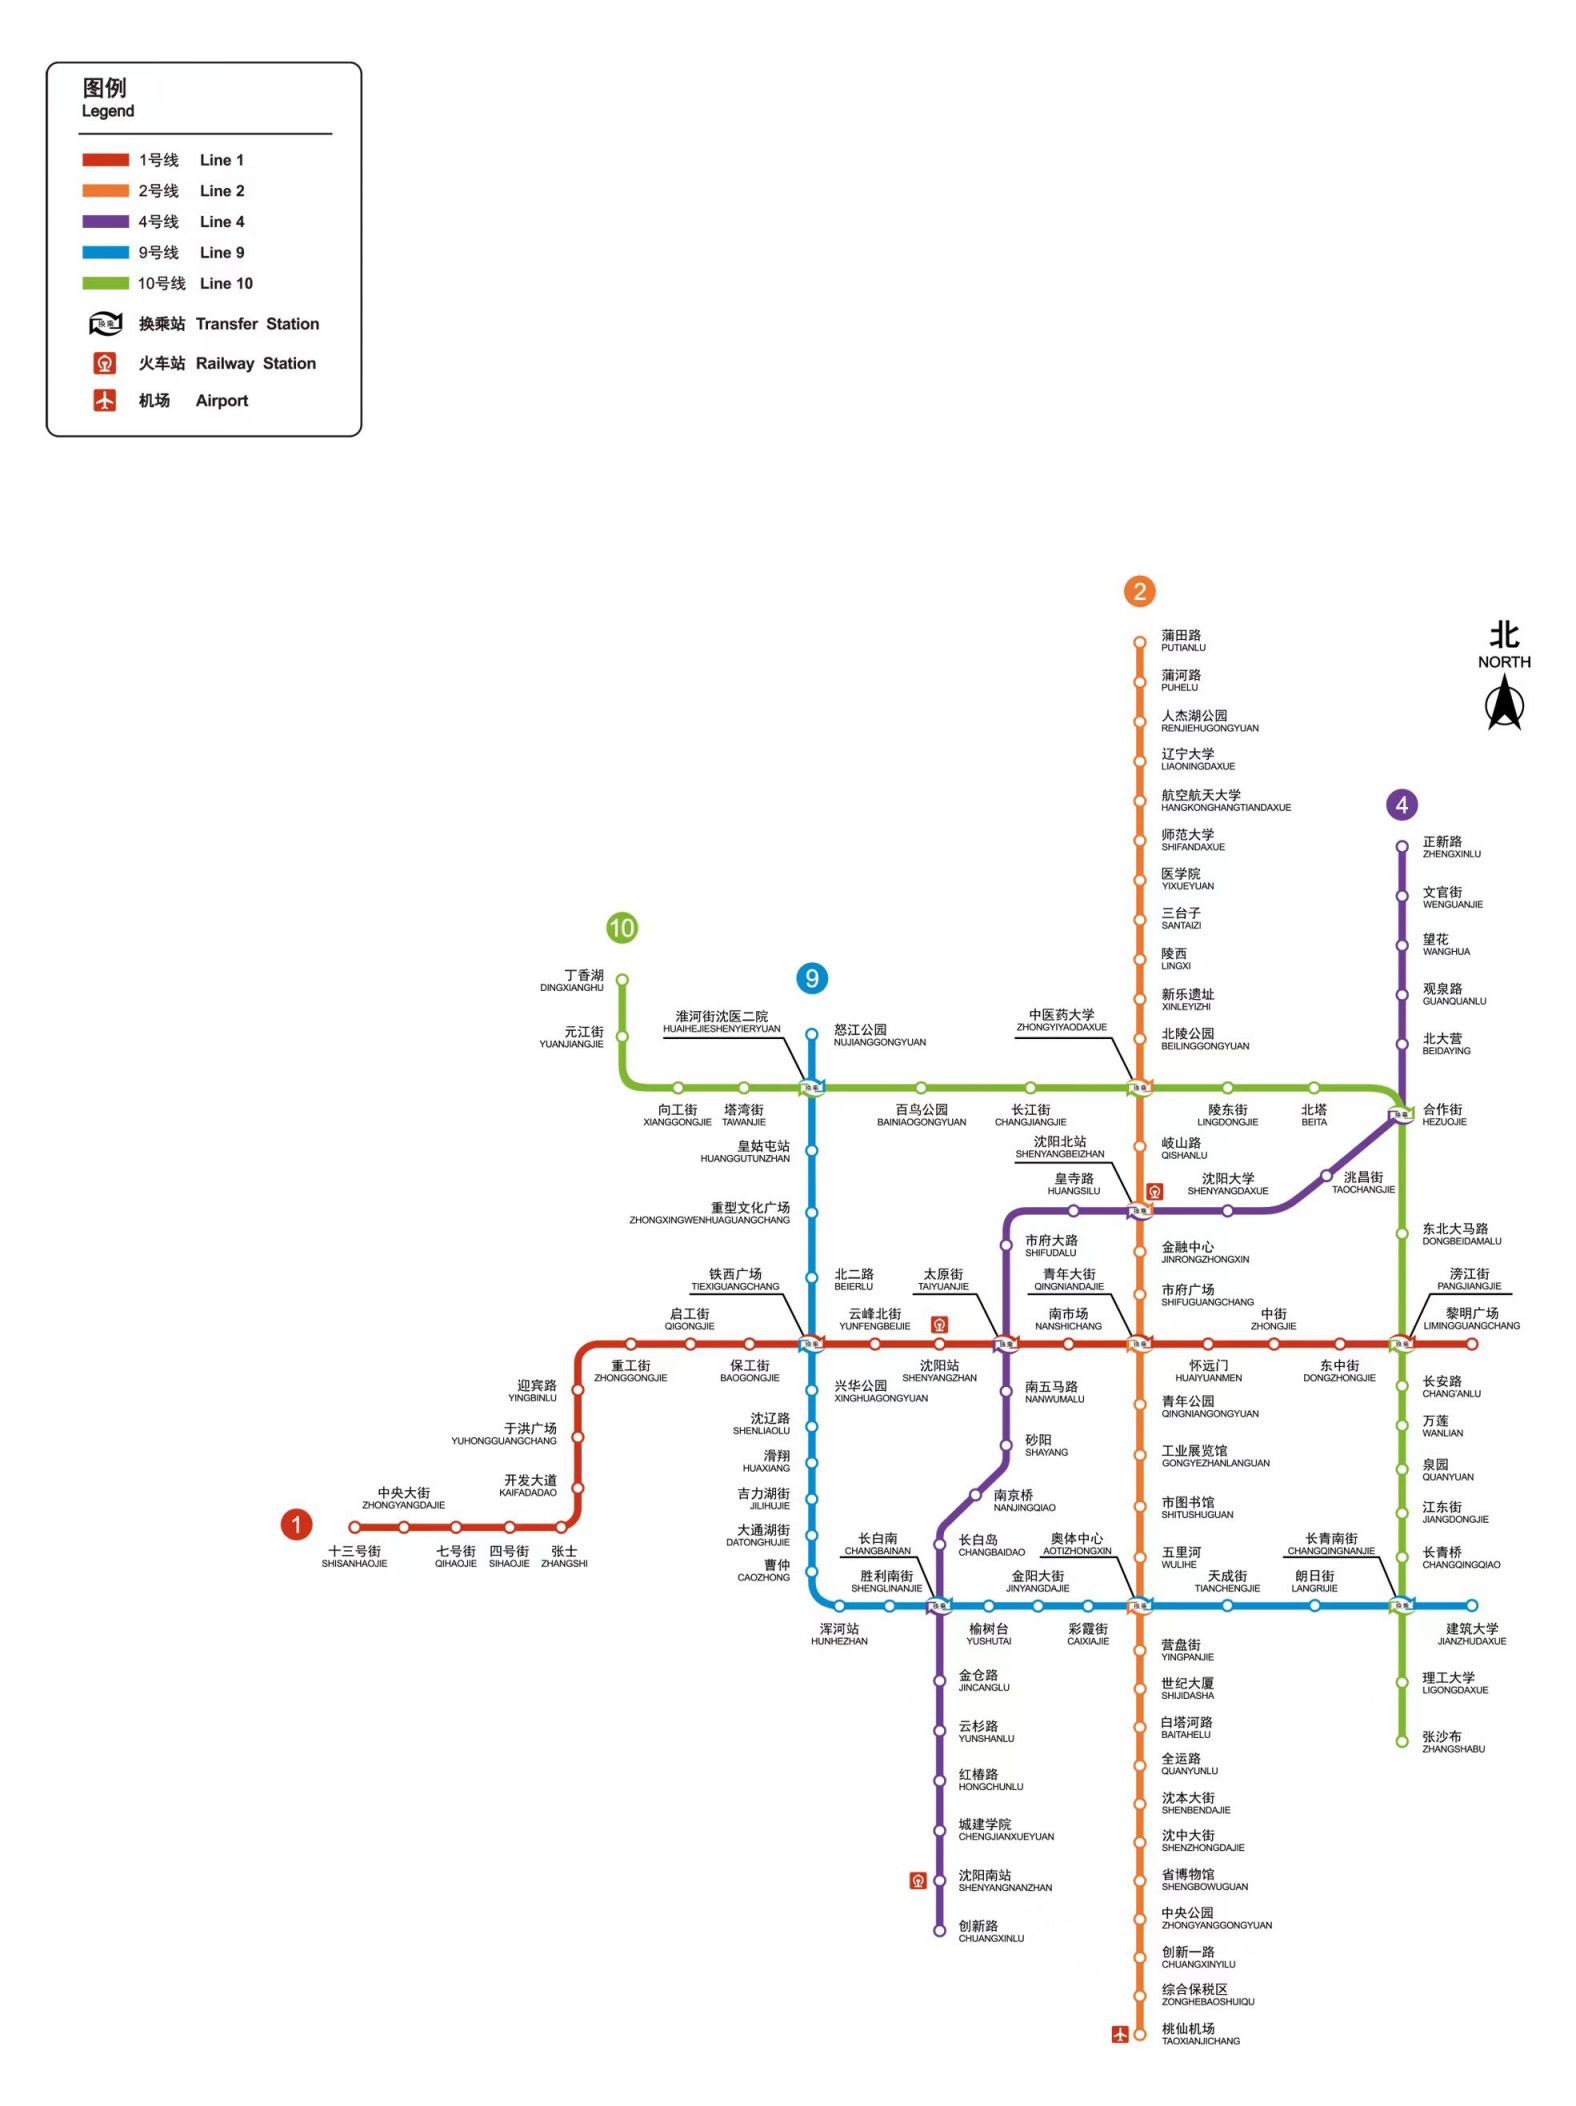 附线路图 沈阳地铁9号线换乘站有哪些?附线路图 